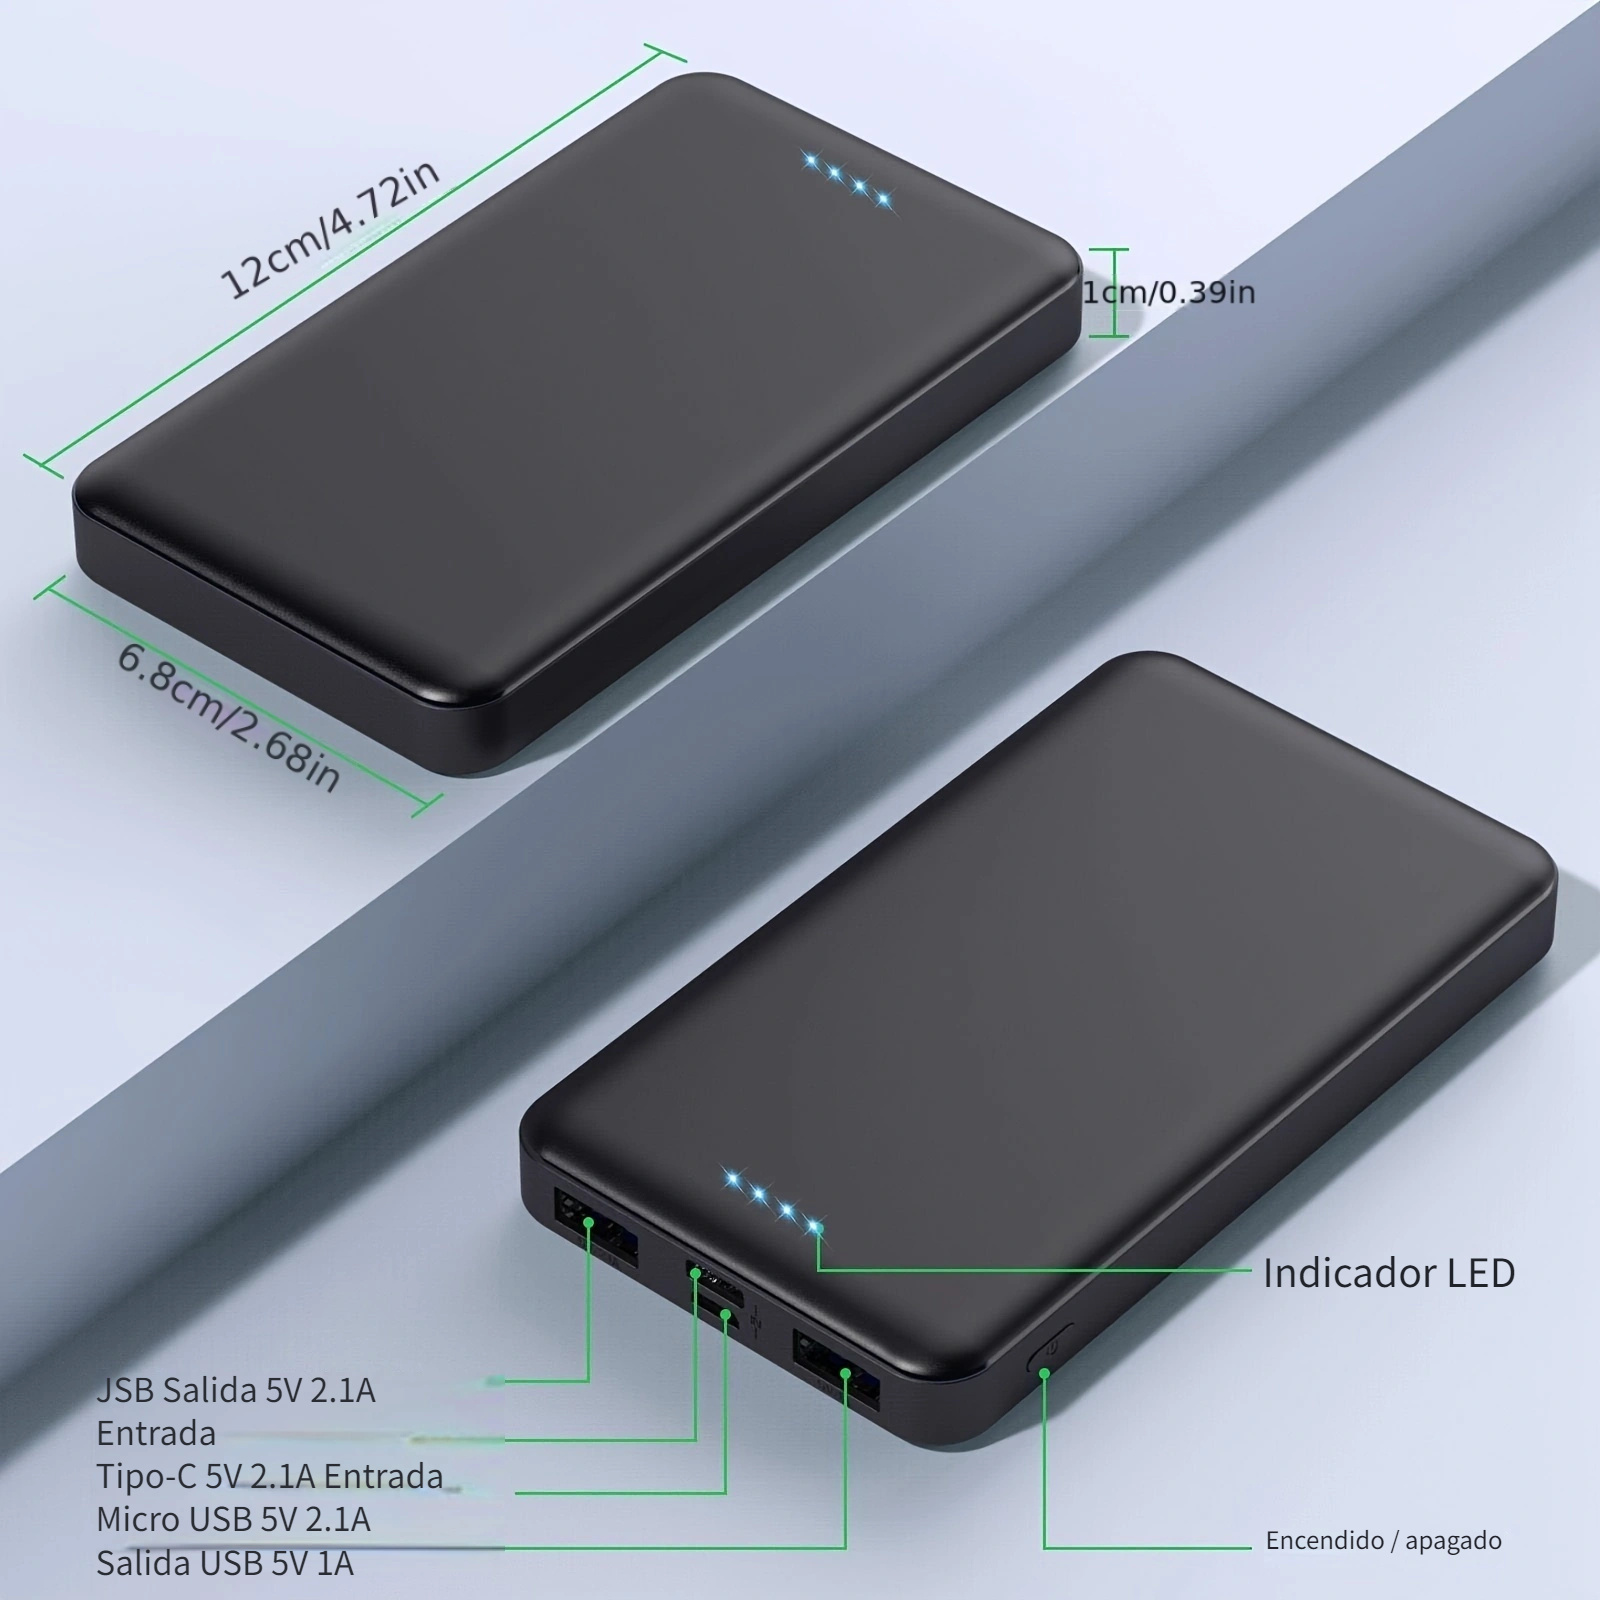  Cargador solar 20000mAh Banco de energía solar impermeable portátil  cargador de batería de reserva externo incorporado dual USB/linterna para  todos los teléfonos celulares, tabletas y dispositivos electrónicos (negro)  : Celulares y